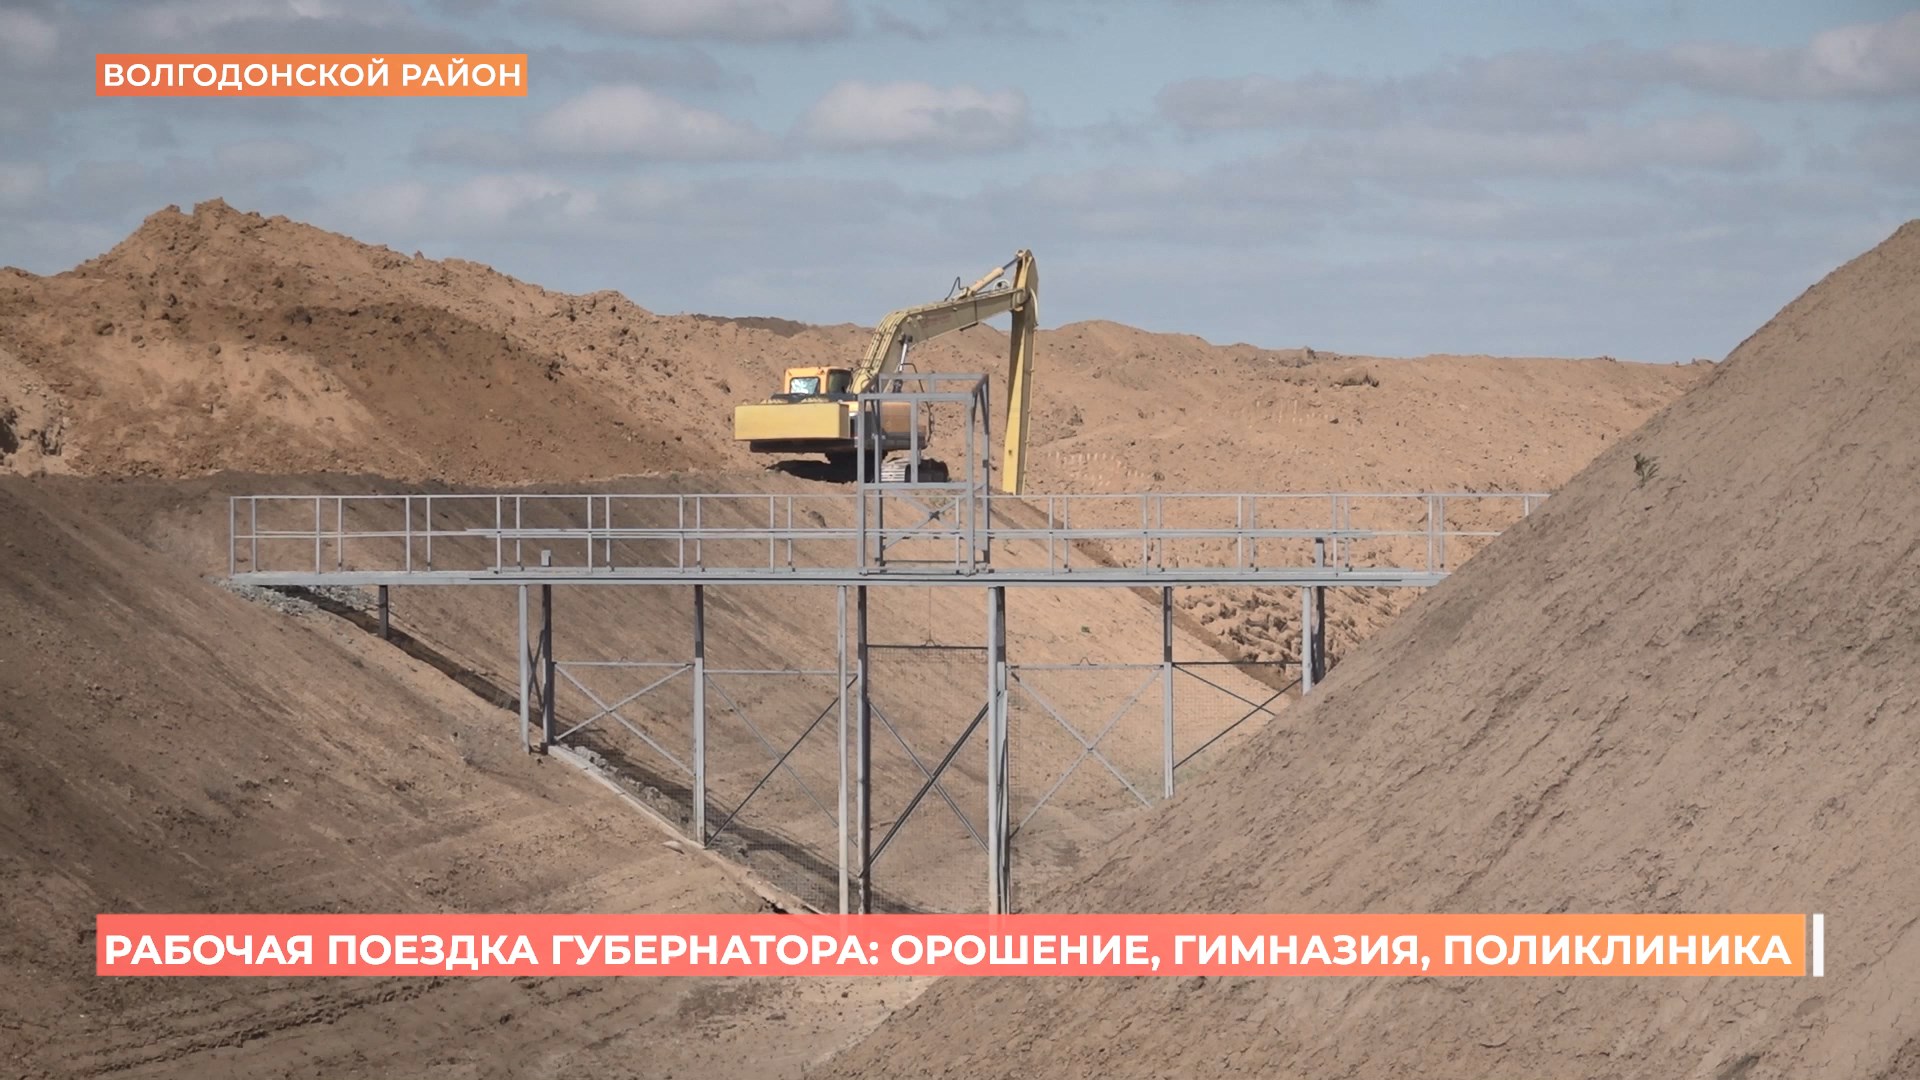 В Волгодонском районе реализуется крупнейший в регионе проект по модернизации оросительной системы